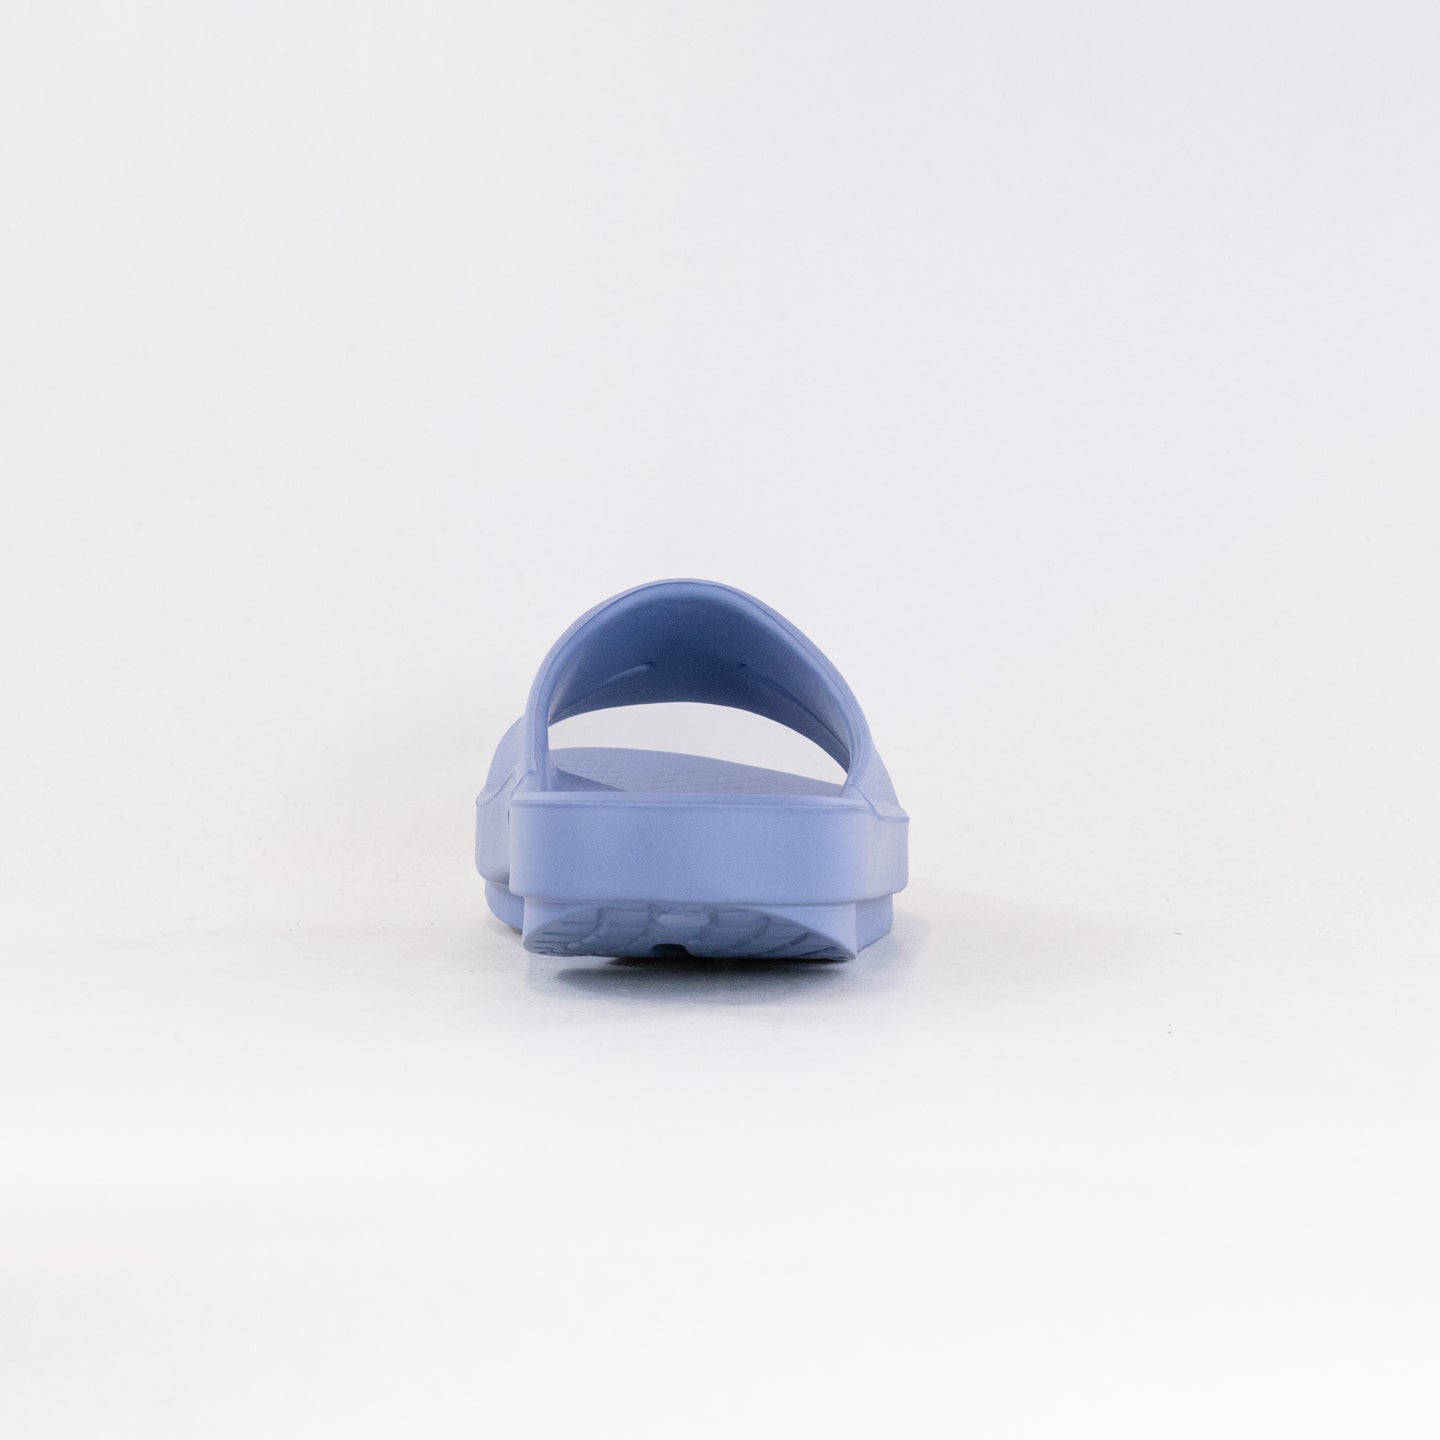 OOFOS OOahh  Slide Sandal (Women's) - Neptune Blue